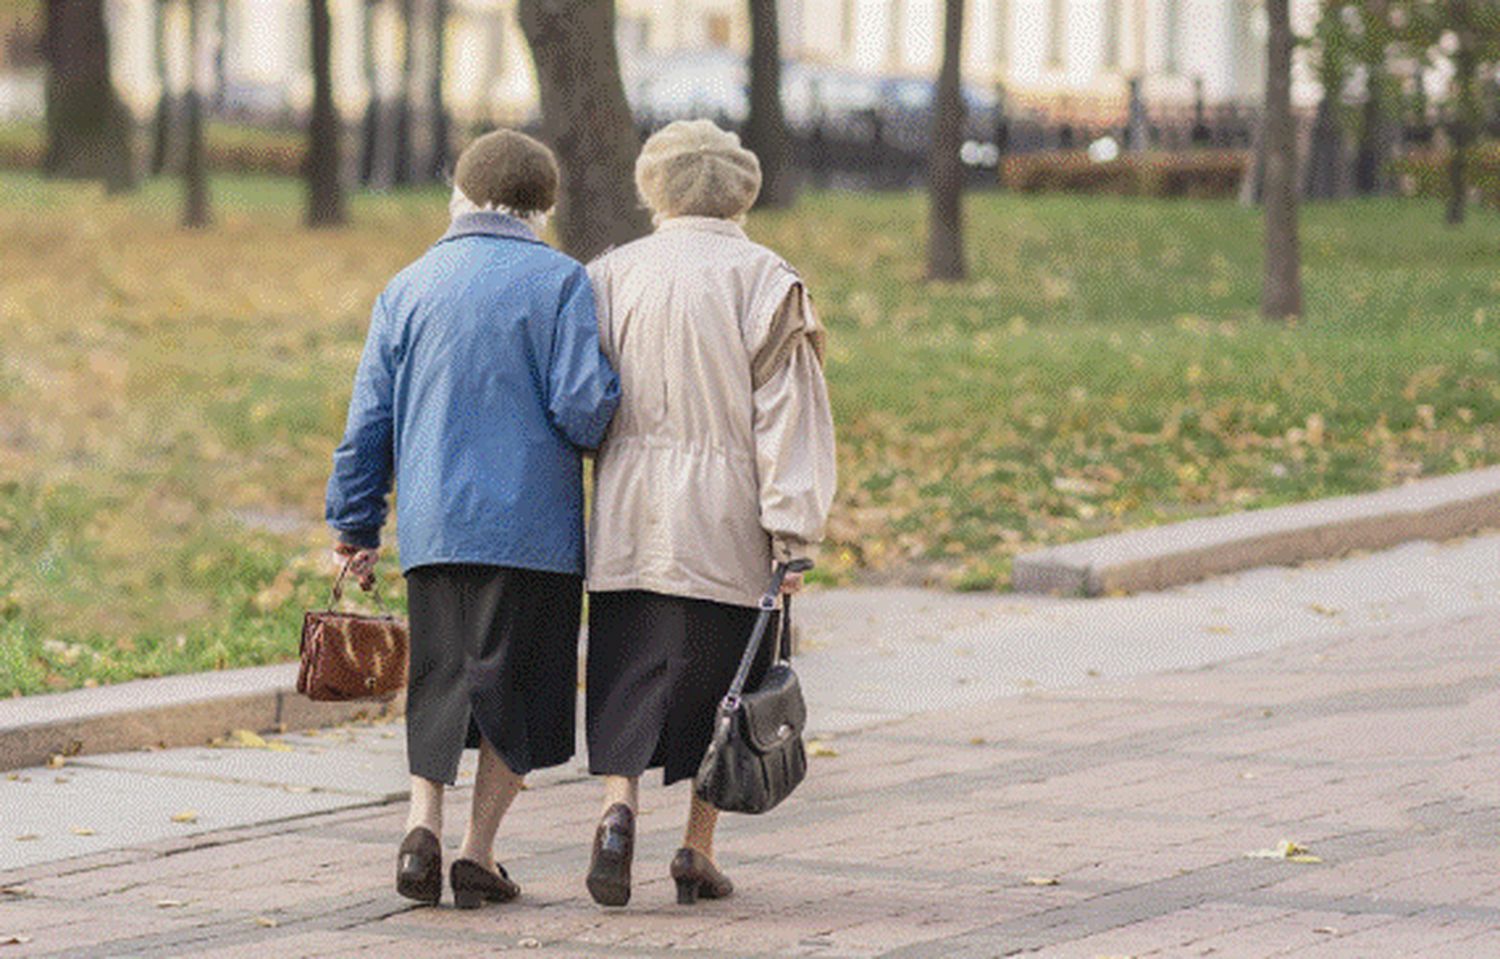 Veste extraordinară pentru pensionari. Ce se va întâmpla cu banii bunicilor începând cu luna martie